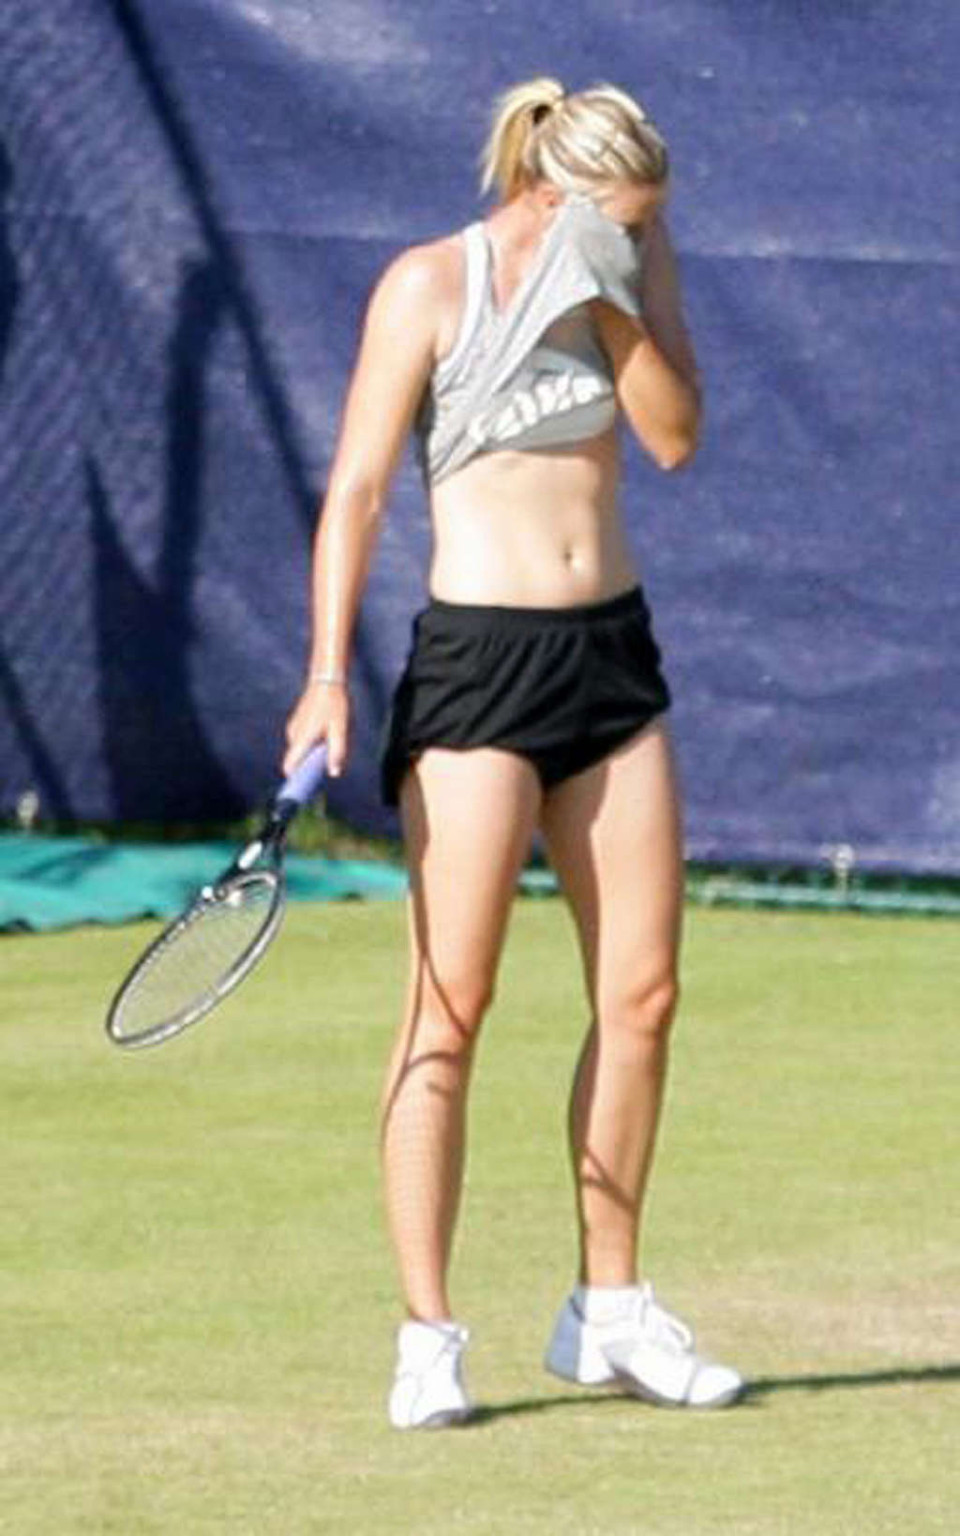 Maria Sharapova nipple slip while play tennis paparazzi shoots #75346433